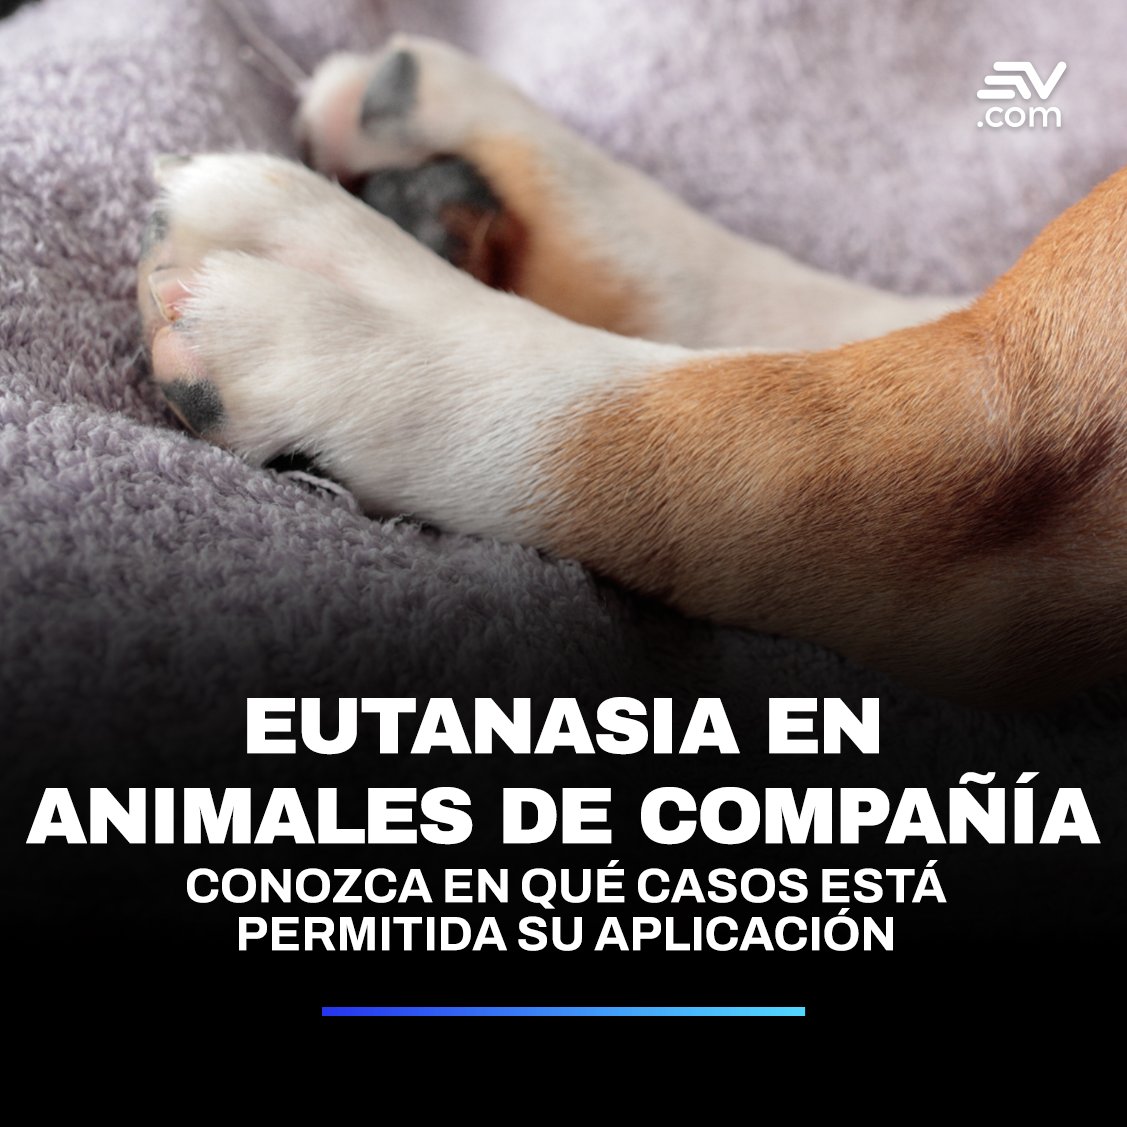 📢 En #Quito, la eutanasia se aplica 'como un acto de compasión' en animales rescatados que no pueden ser rehabilitados ➡ bit.ly/3yIOvam